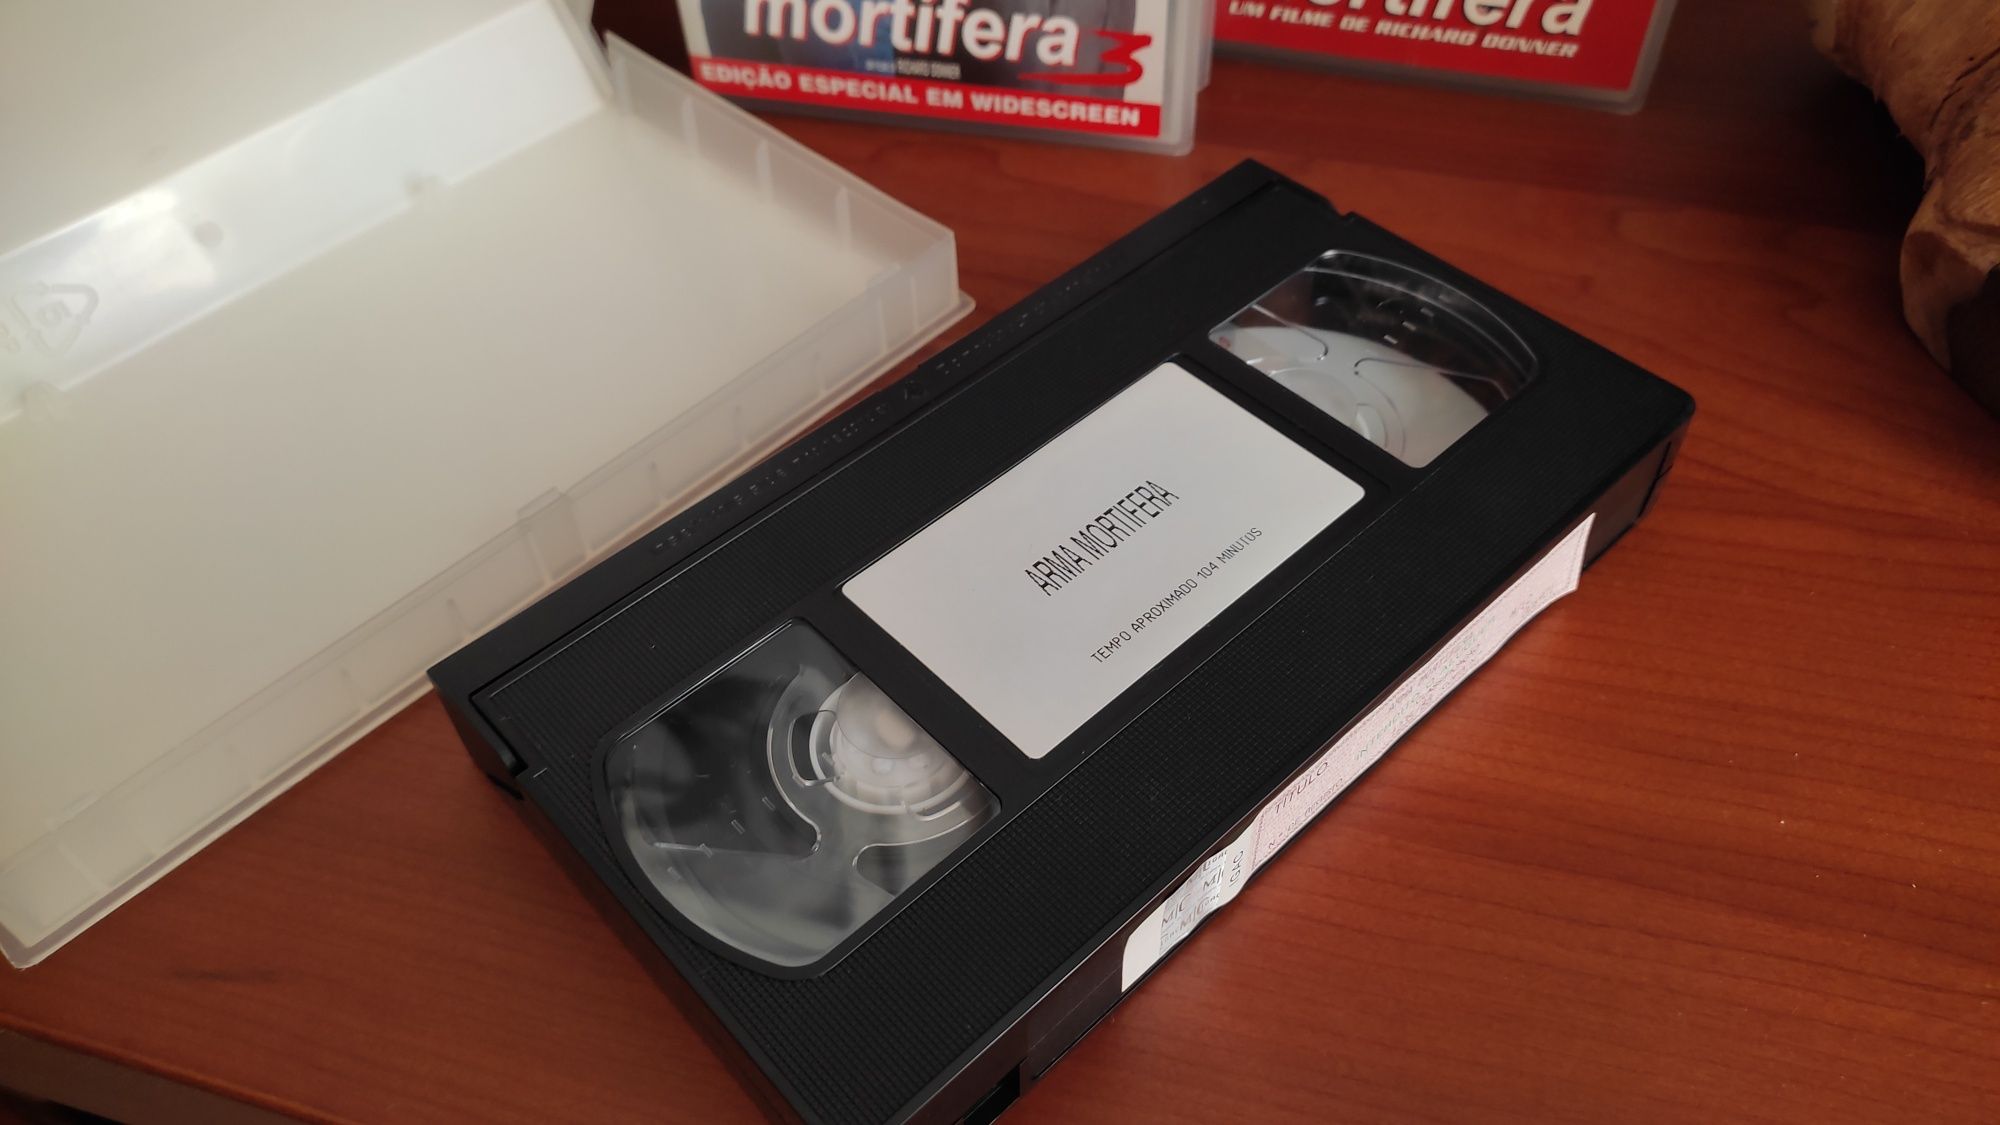 Arma Mortífera 1, 2, 3 e 4 VHS